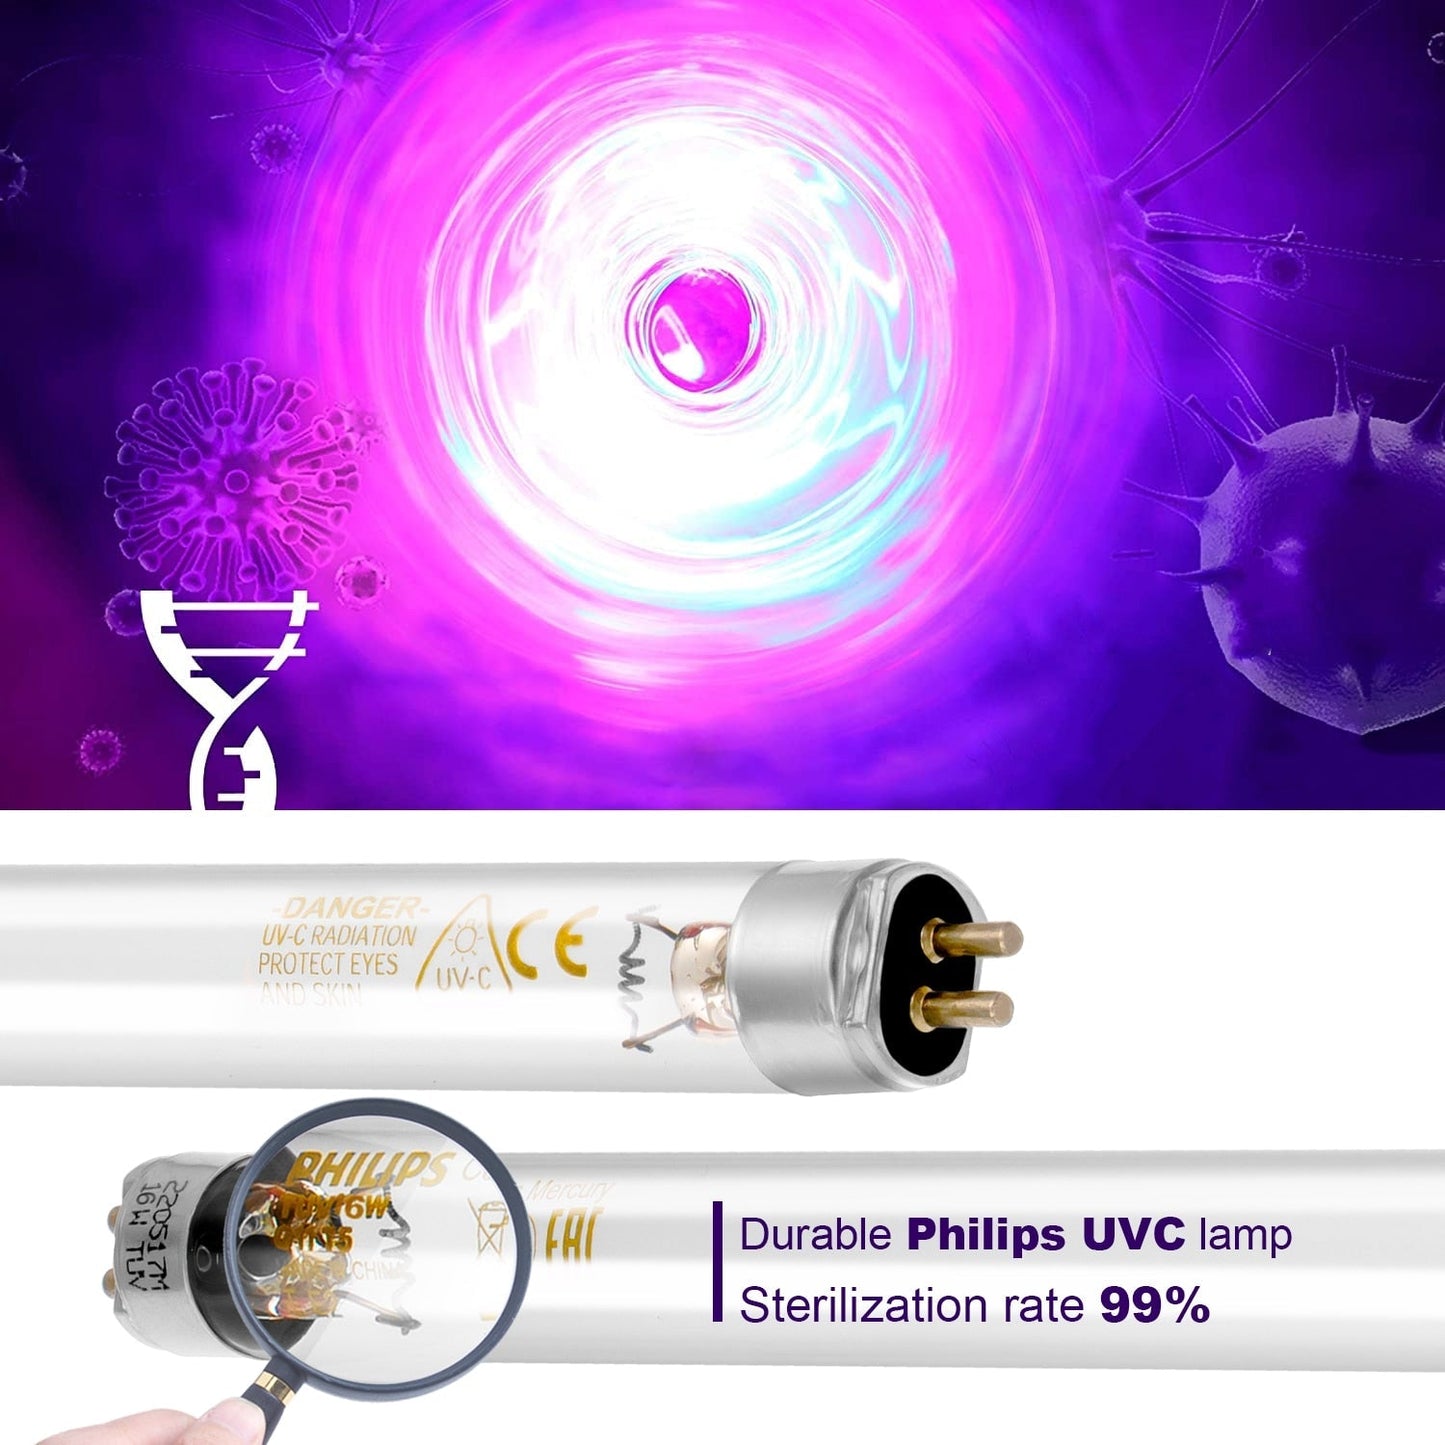 ALTHY Sistema de esterilizador de agua UV de acero inoxidable Lámpara de tubo ultravioleta Purificador de filtro de desinfección directa de bebidas / Lámpara PHILIPS